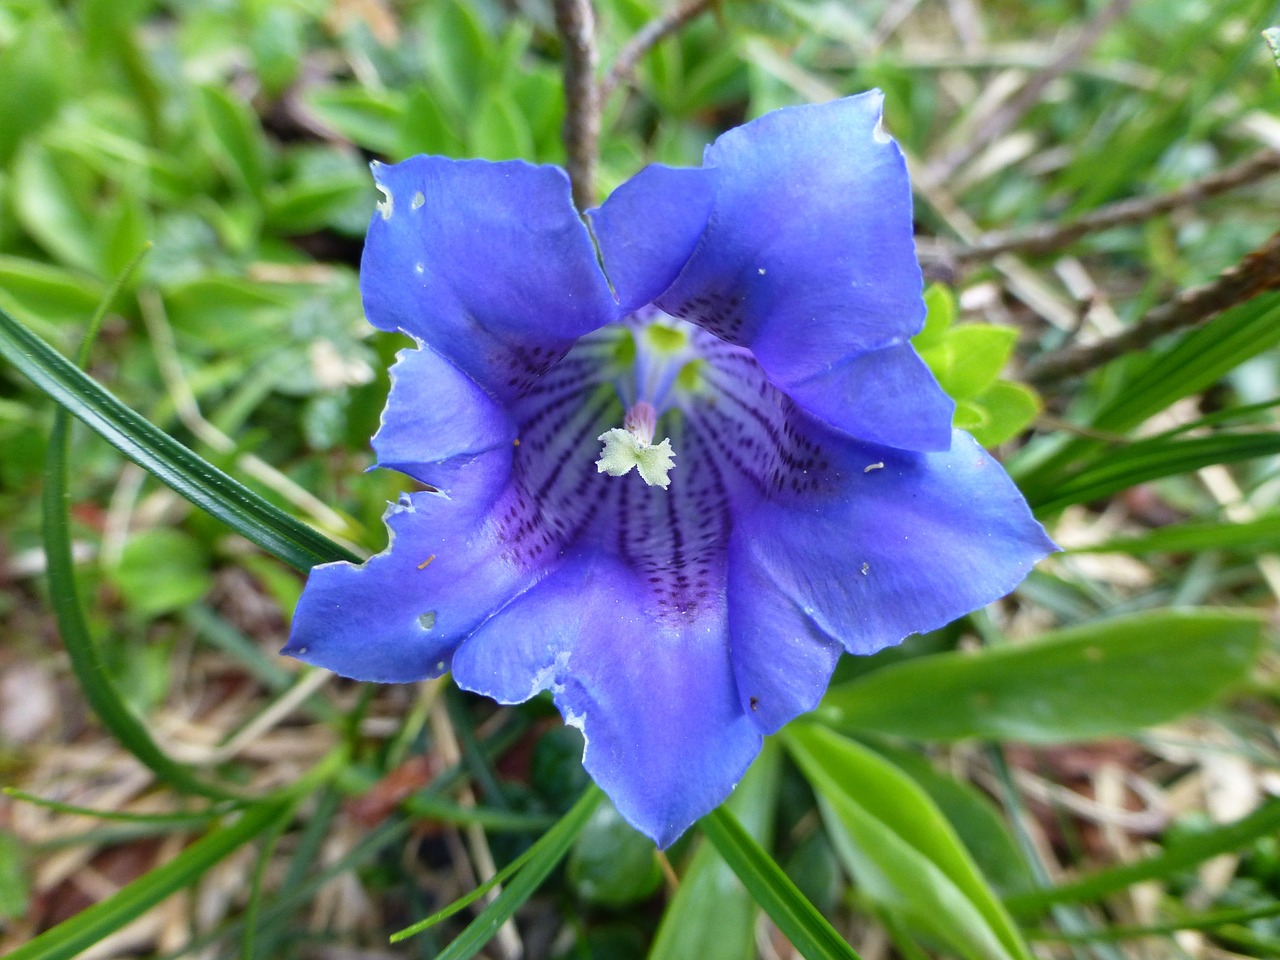 blue gentian gentian flower free photo